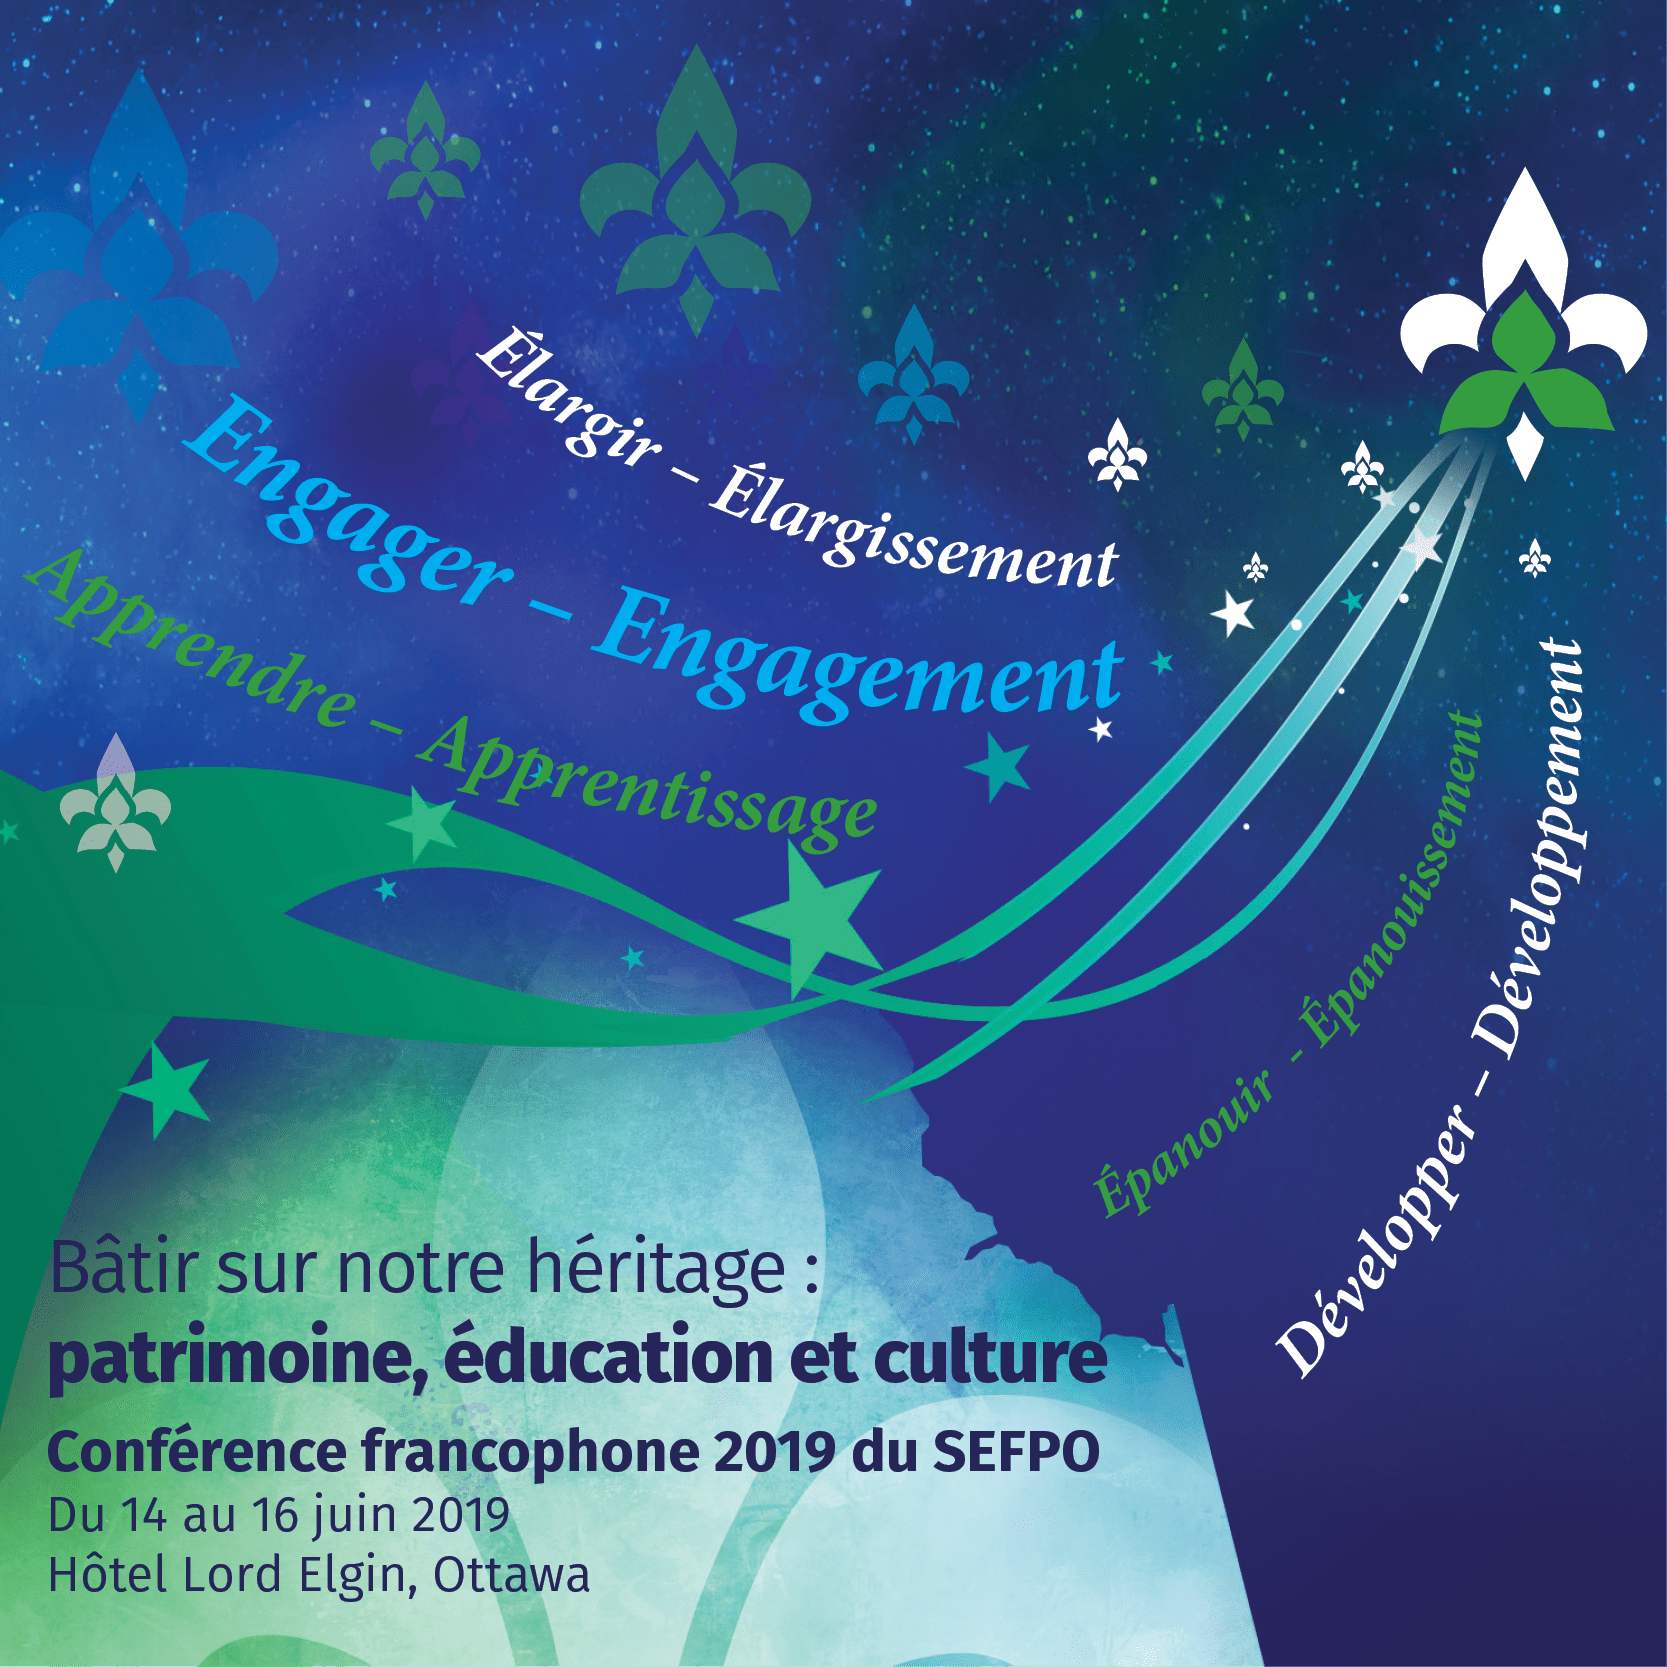 Conference francophone 2019 du SEFPO. Du 14 au 16 juin 2019, Hotel Lord Elgin, Ottawa